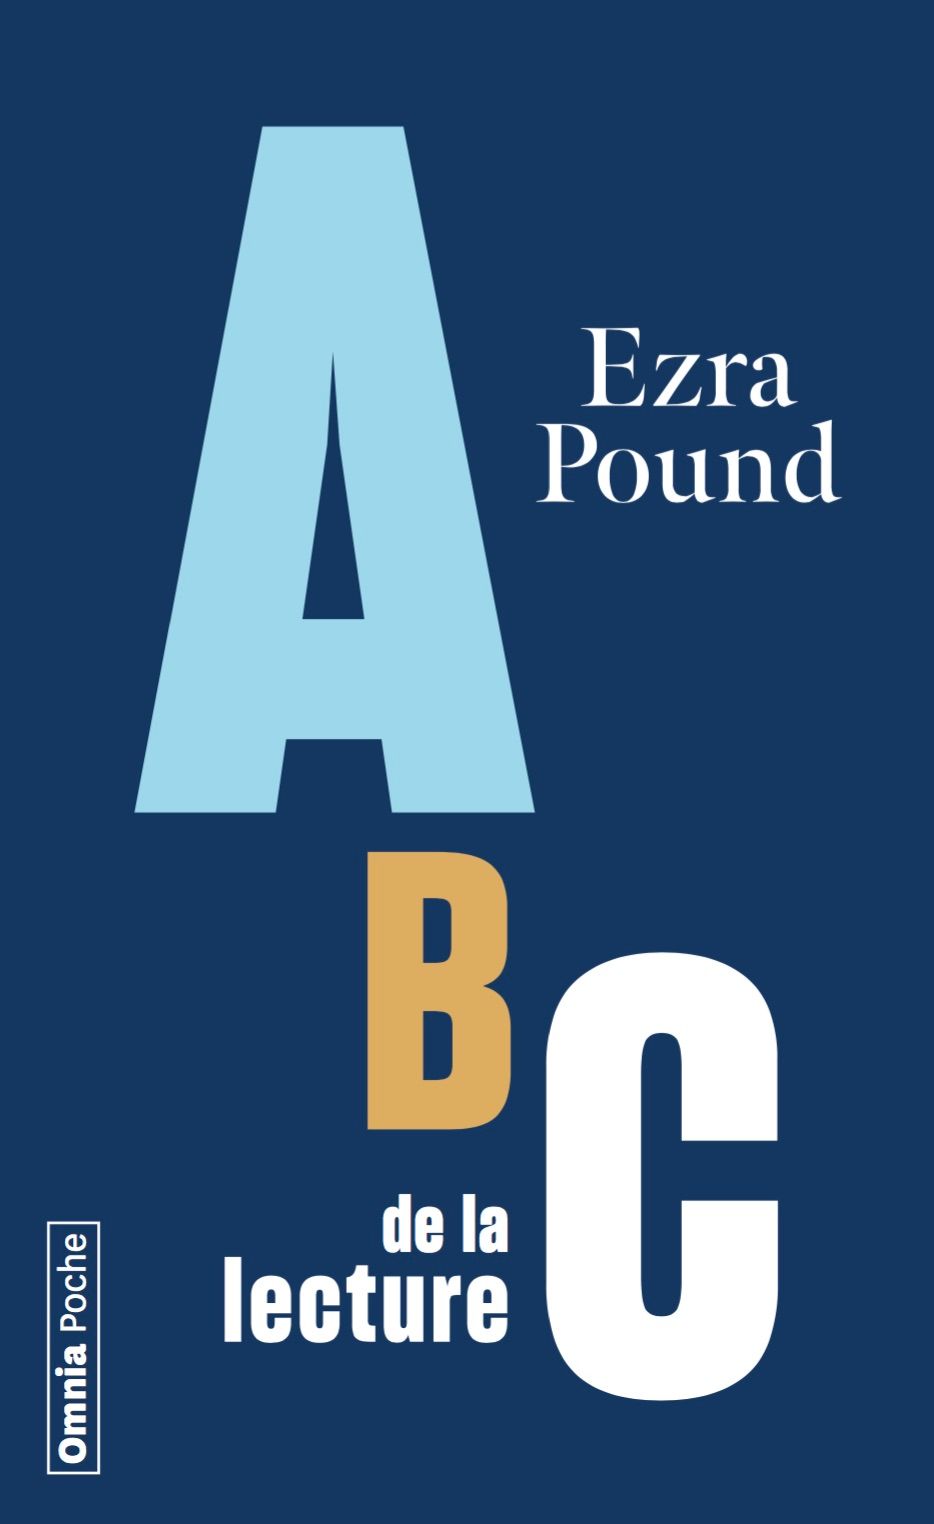 Ezra Pound, ABC de la lecture